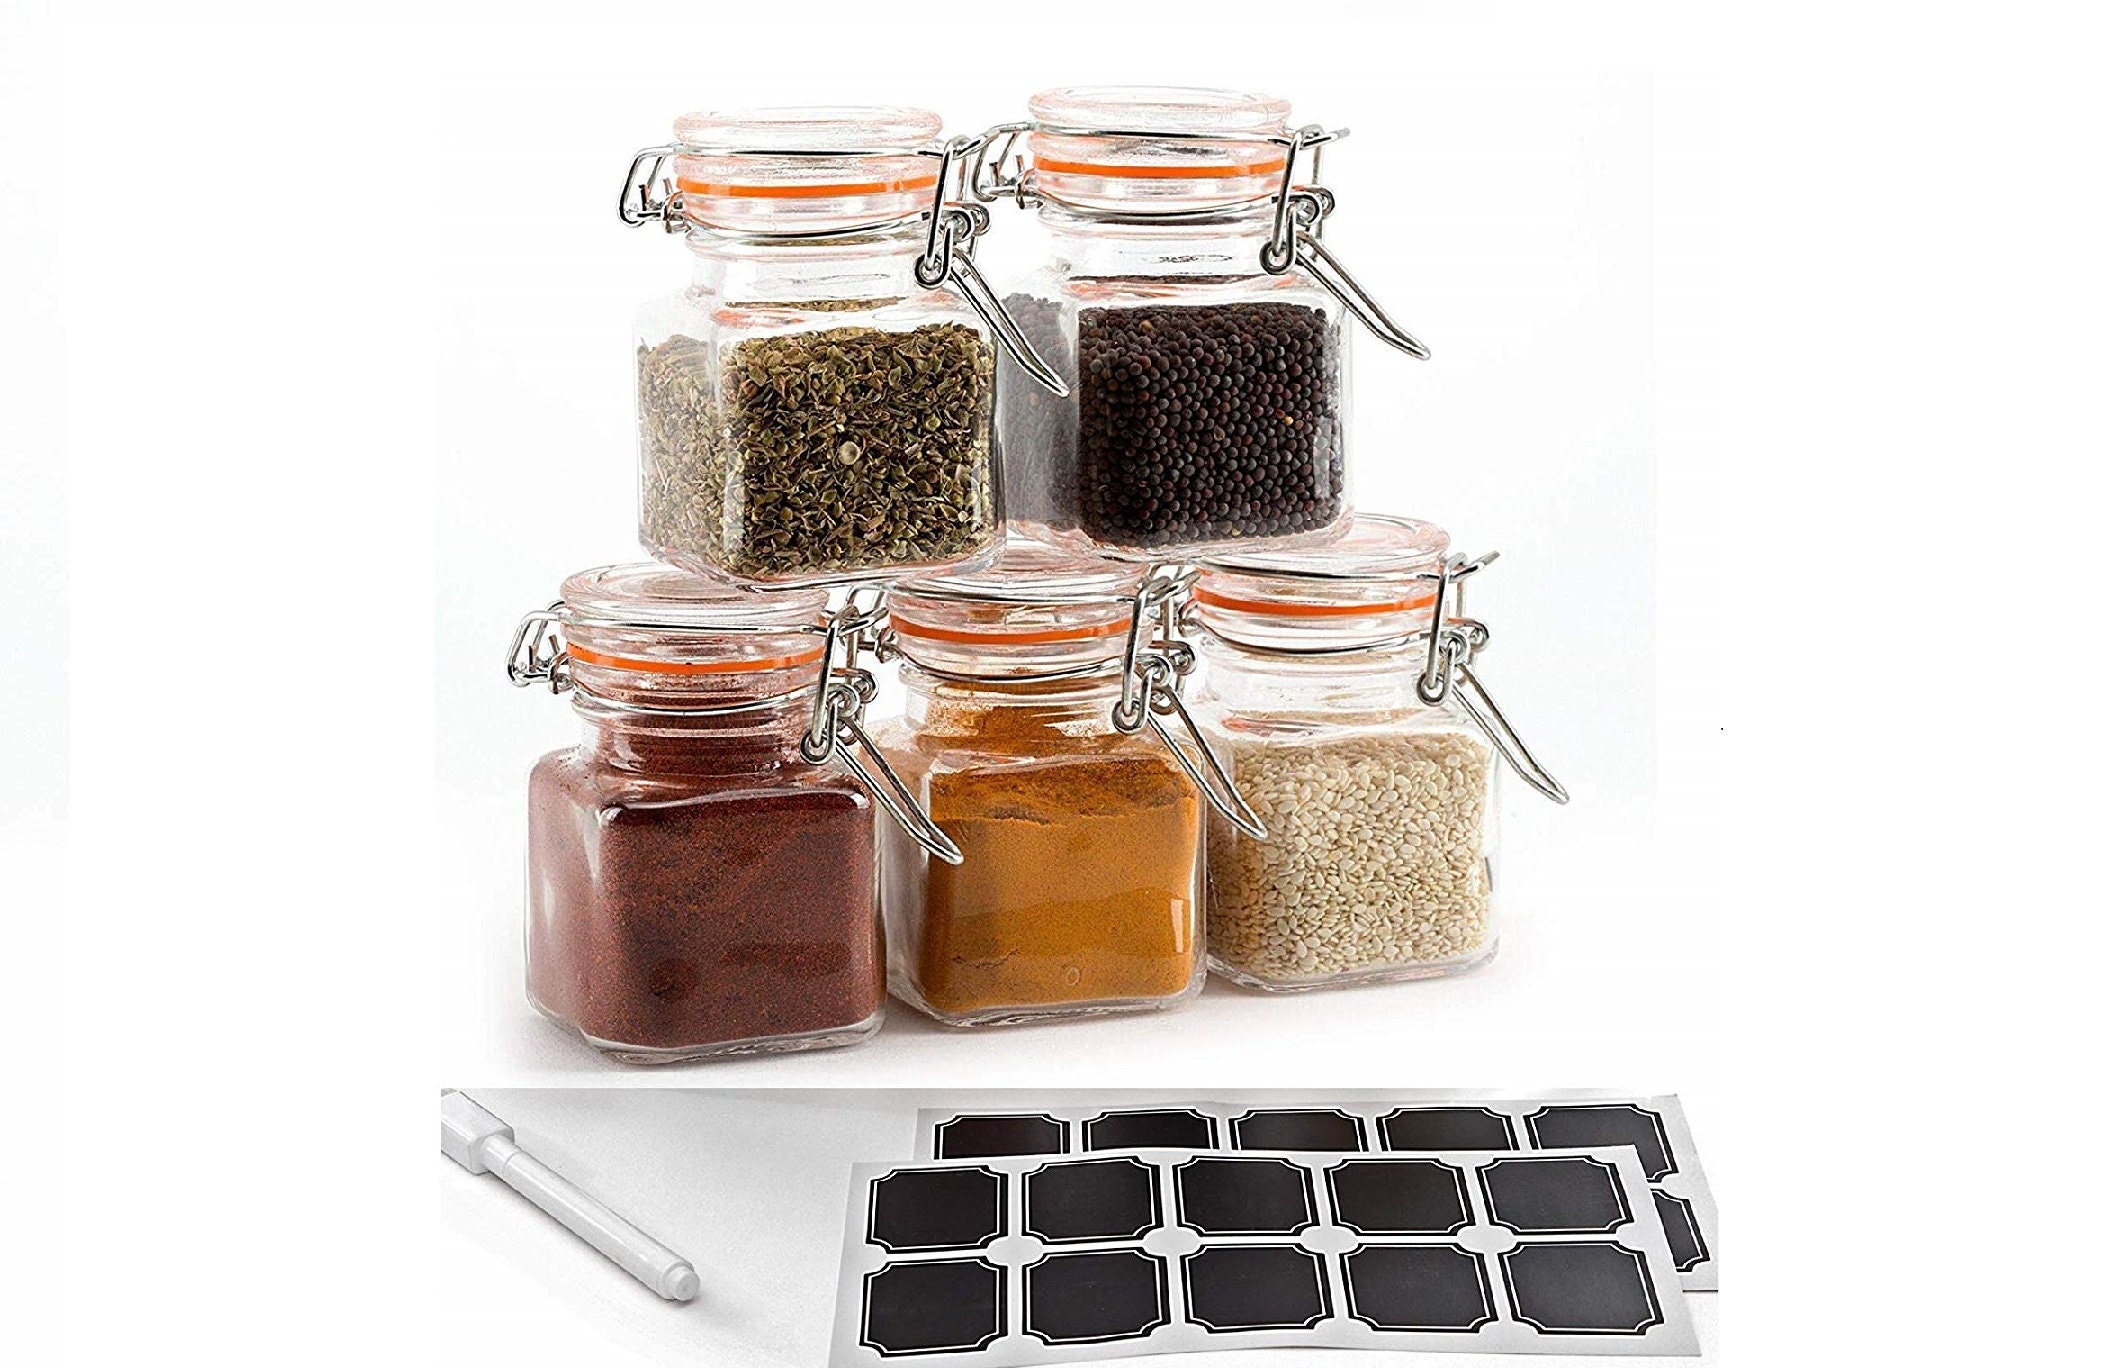 Pengpengfang 2 Pcs Spice Jar with Lid Clear Detachable Reusable